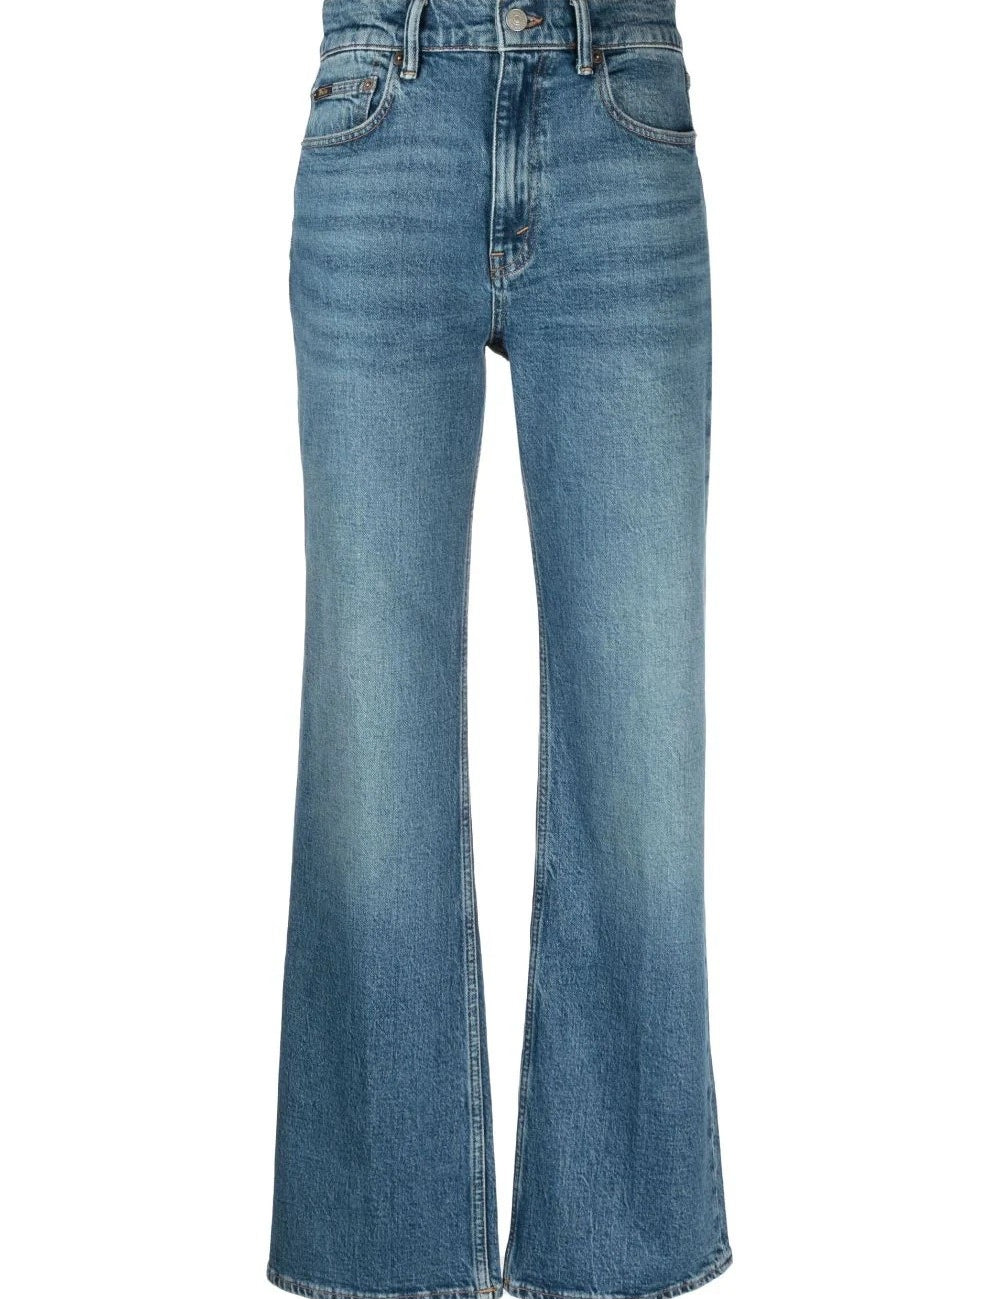 5-pocket-flare-jeans.jpg